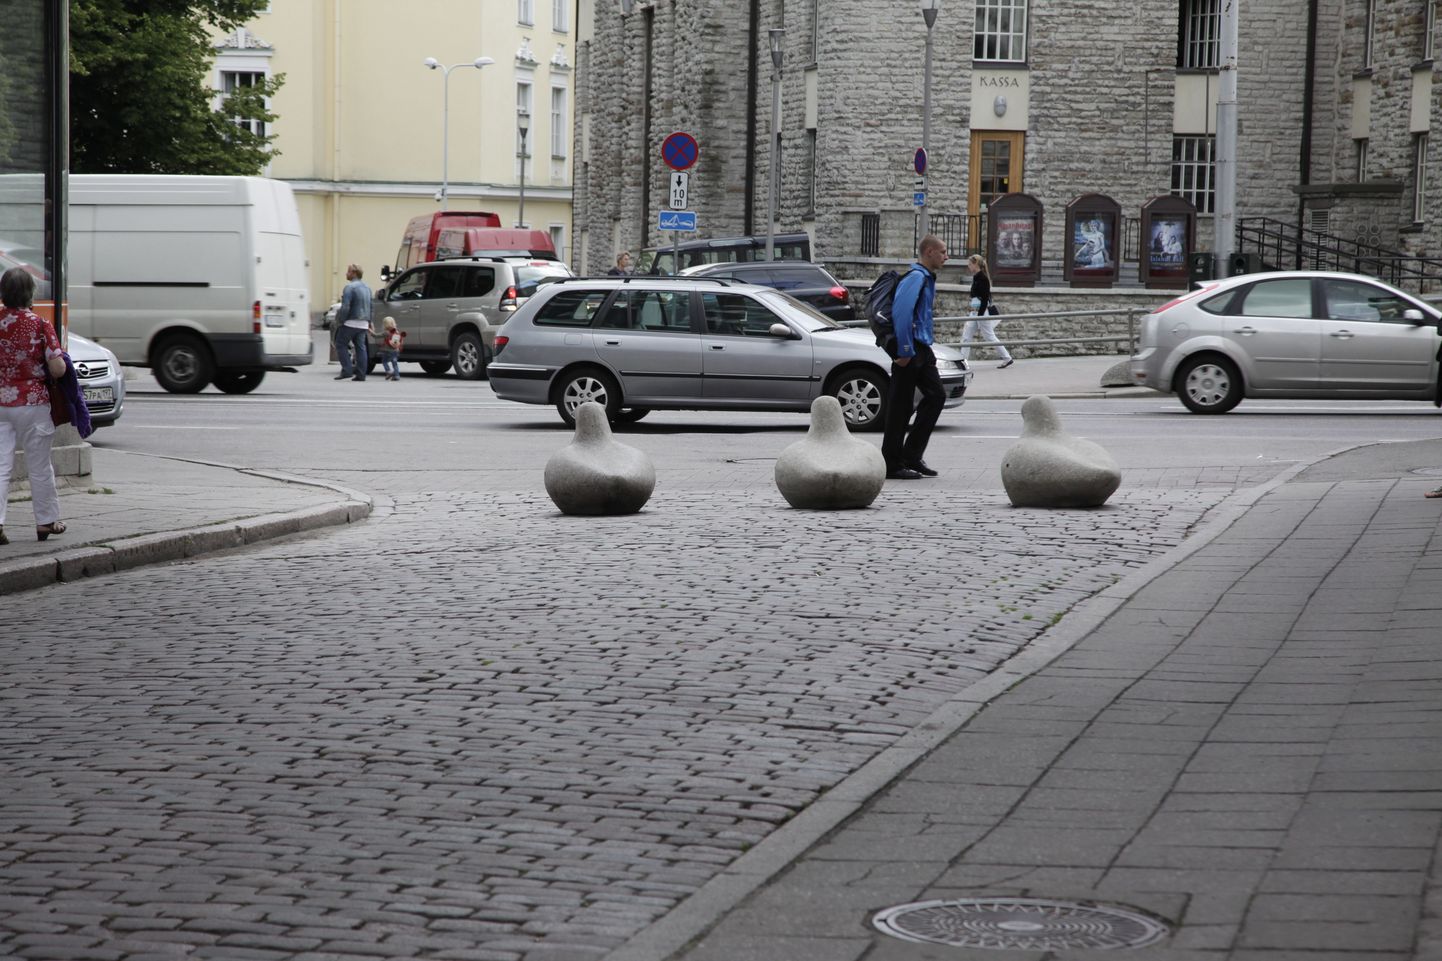 Бетонные голуби в начале улица Вяйке-Карья.